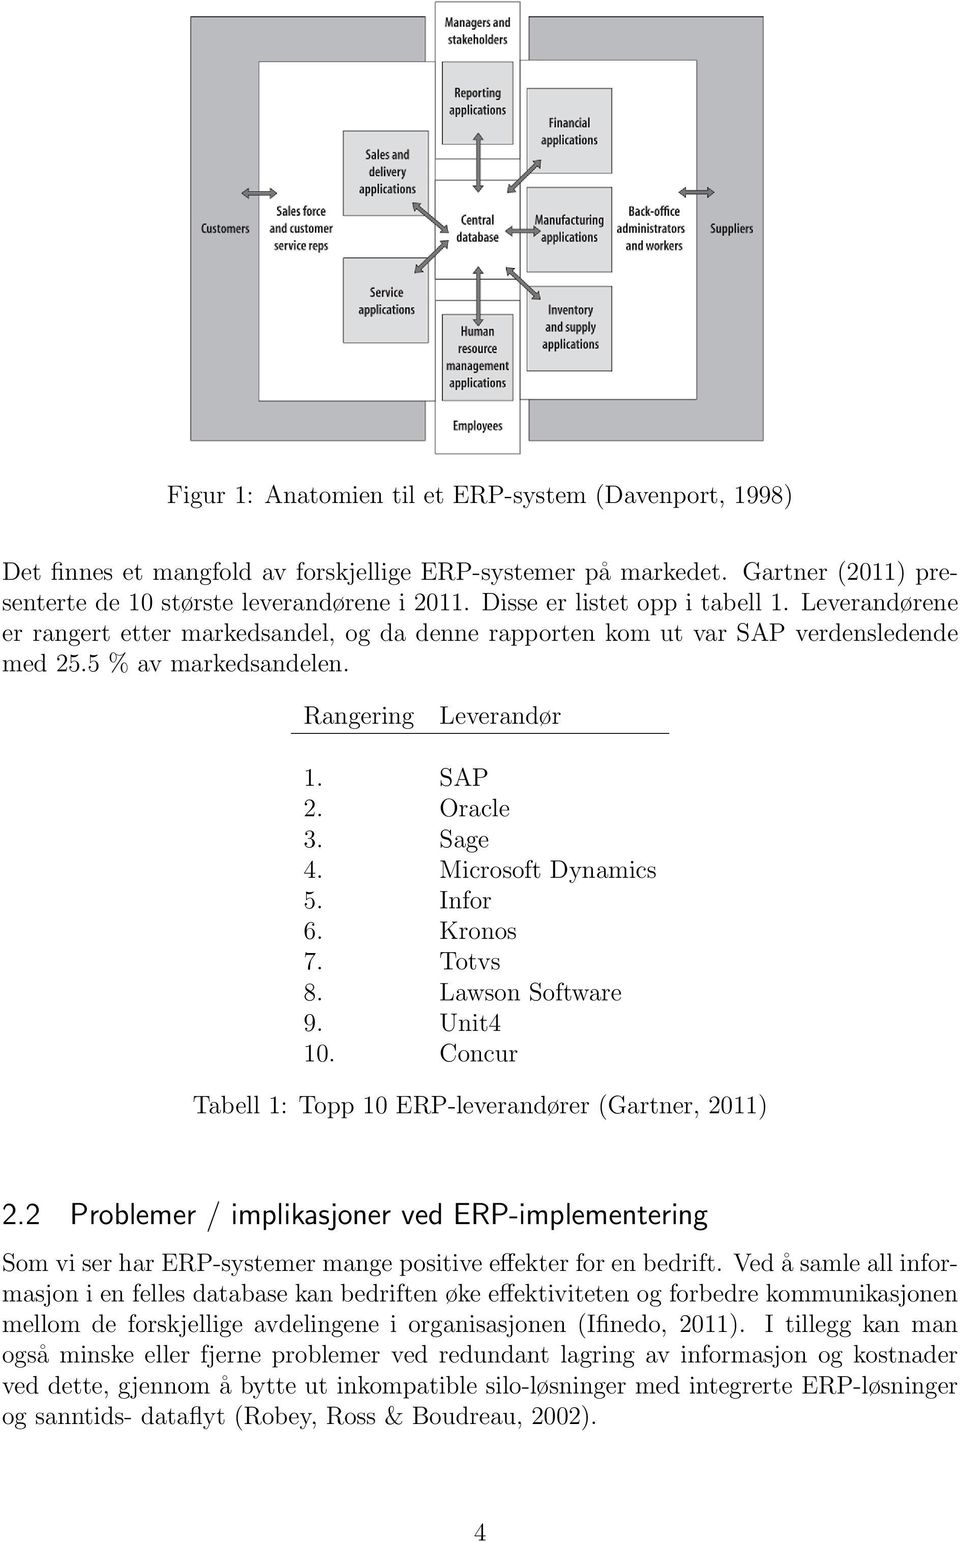 Sage 4. Microsoft Dynamics 5. Infor 6. Kronos 7. Totvs 8. Lawson Software 9. Unit4 10. Concur Tabell 1: Topp 10 ERP-leverandører (Gartner, 2011) 2.